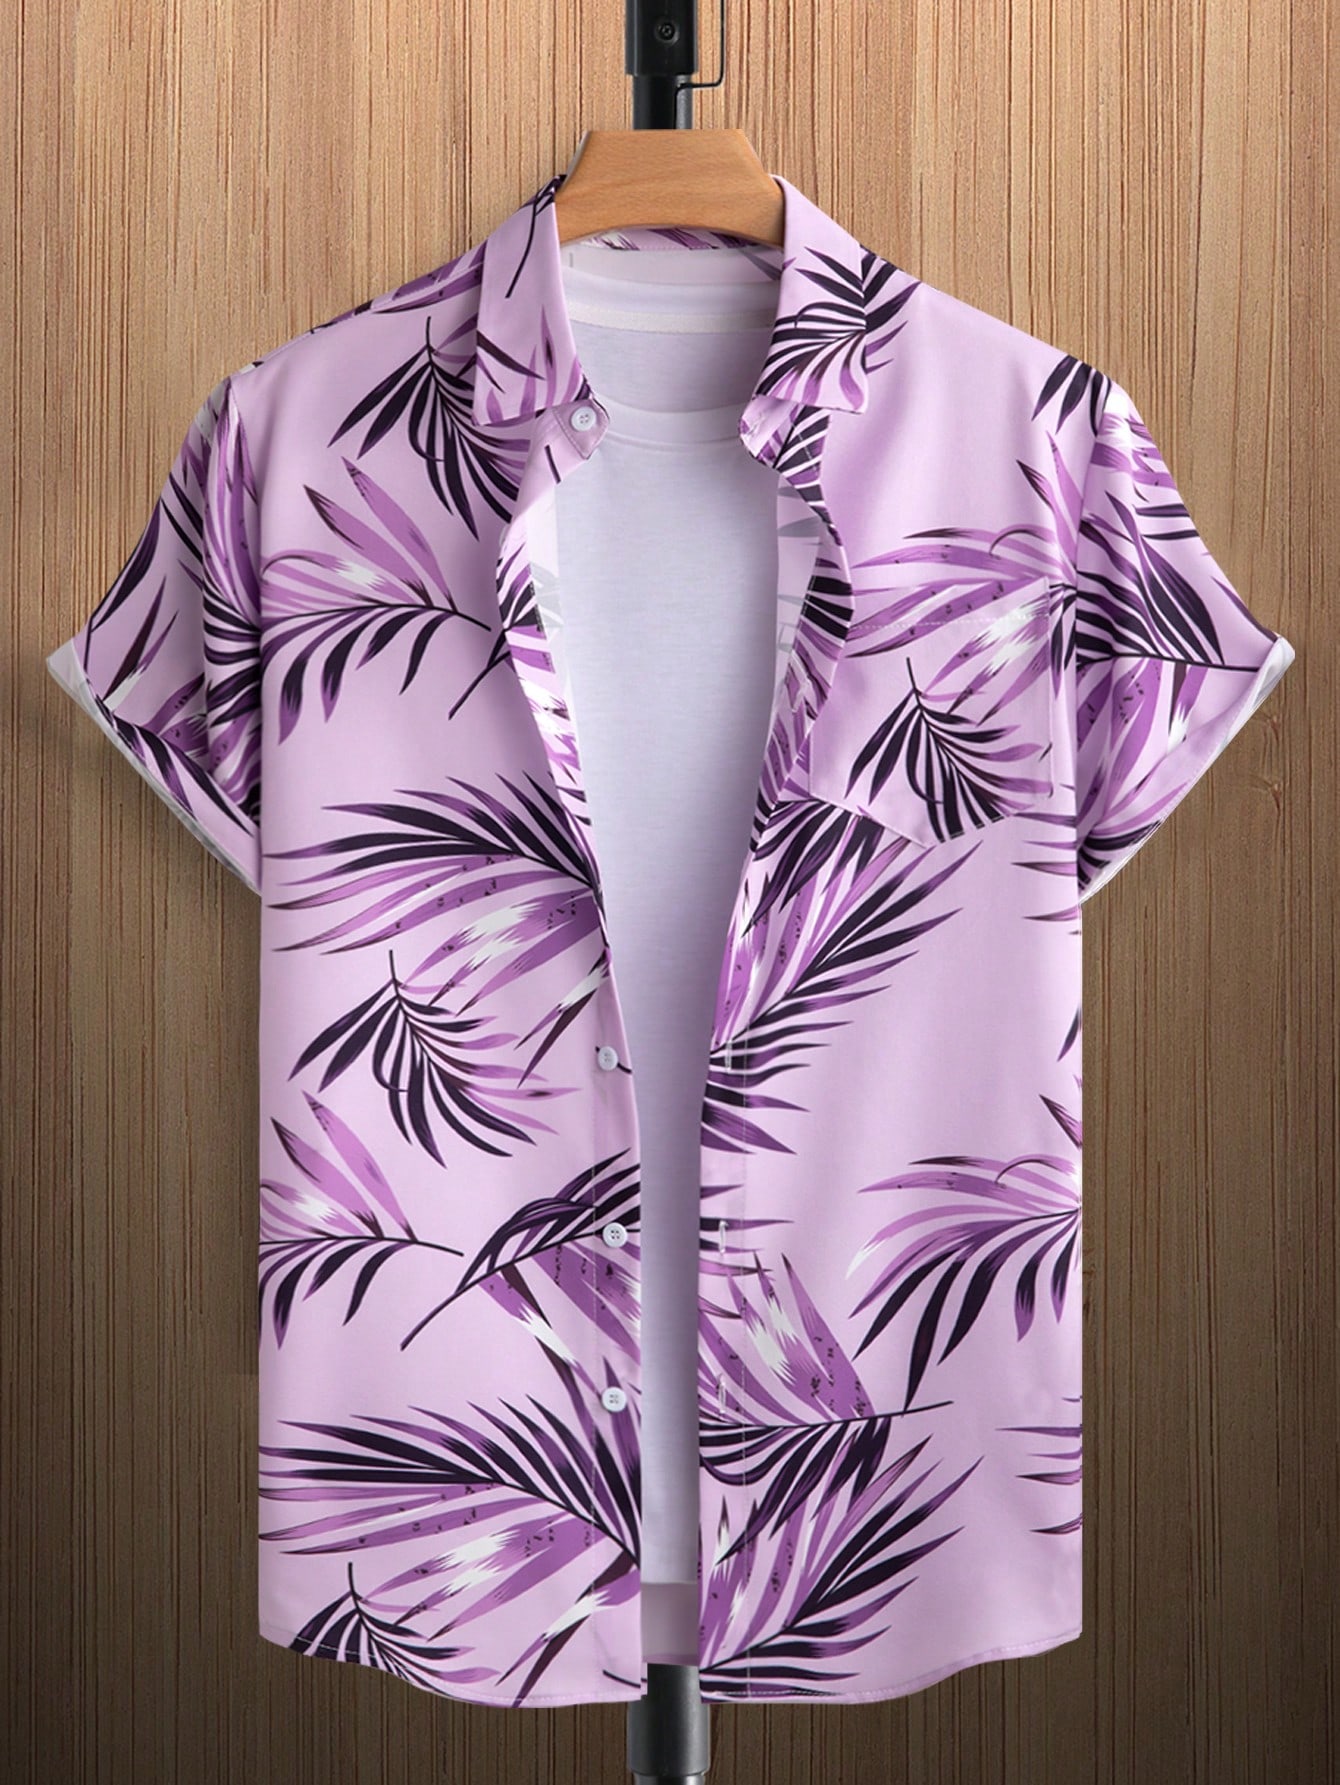 Мужская рубашка с короткими рукавами и принтом листьев на пуговицах Manfinity RSRT, сиреневый фиолетовый